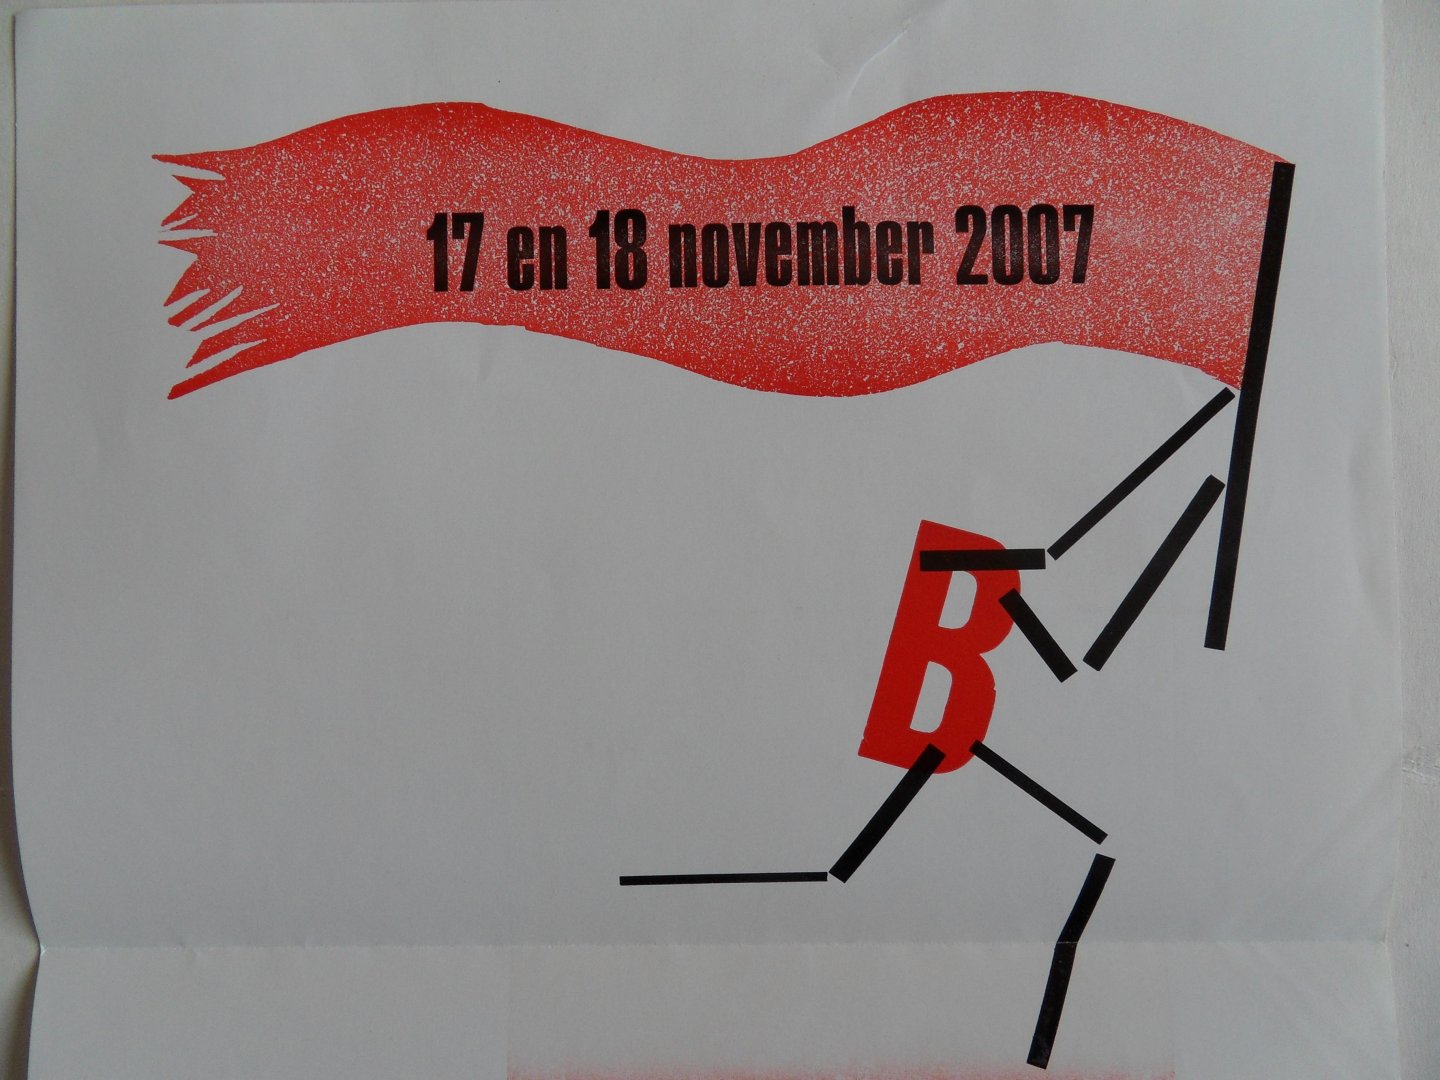 Jong, Frans de (beeld). - 17 en 18 november 2007. - Stichting Drukwerk in de Marge. - Handboekbindersliga - Pieterskerk Leiden.